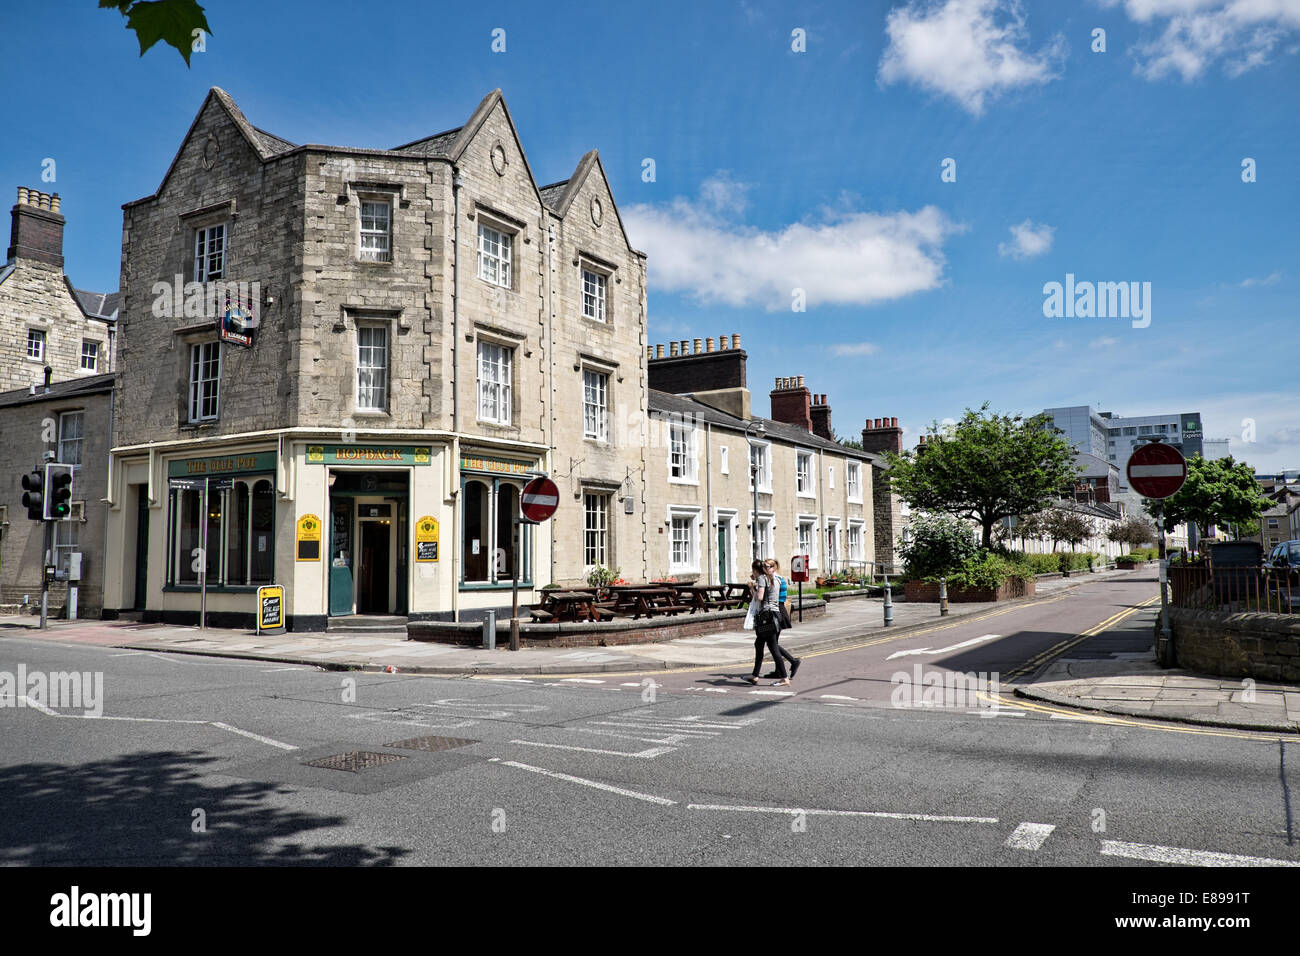 Le pub anglais traditionnel pot de colle sur Emlyn carré au milieu de l'historique, la préservation de la GWR village de Swindon, Royaume-Uni Banque D'Images